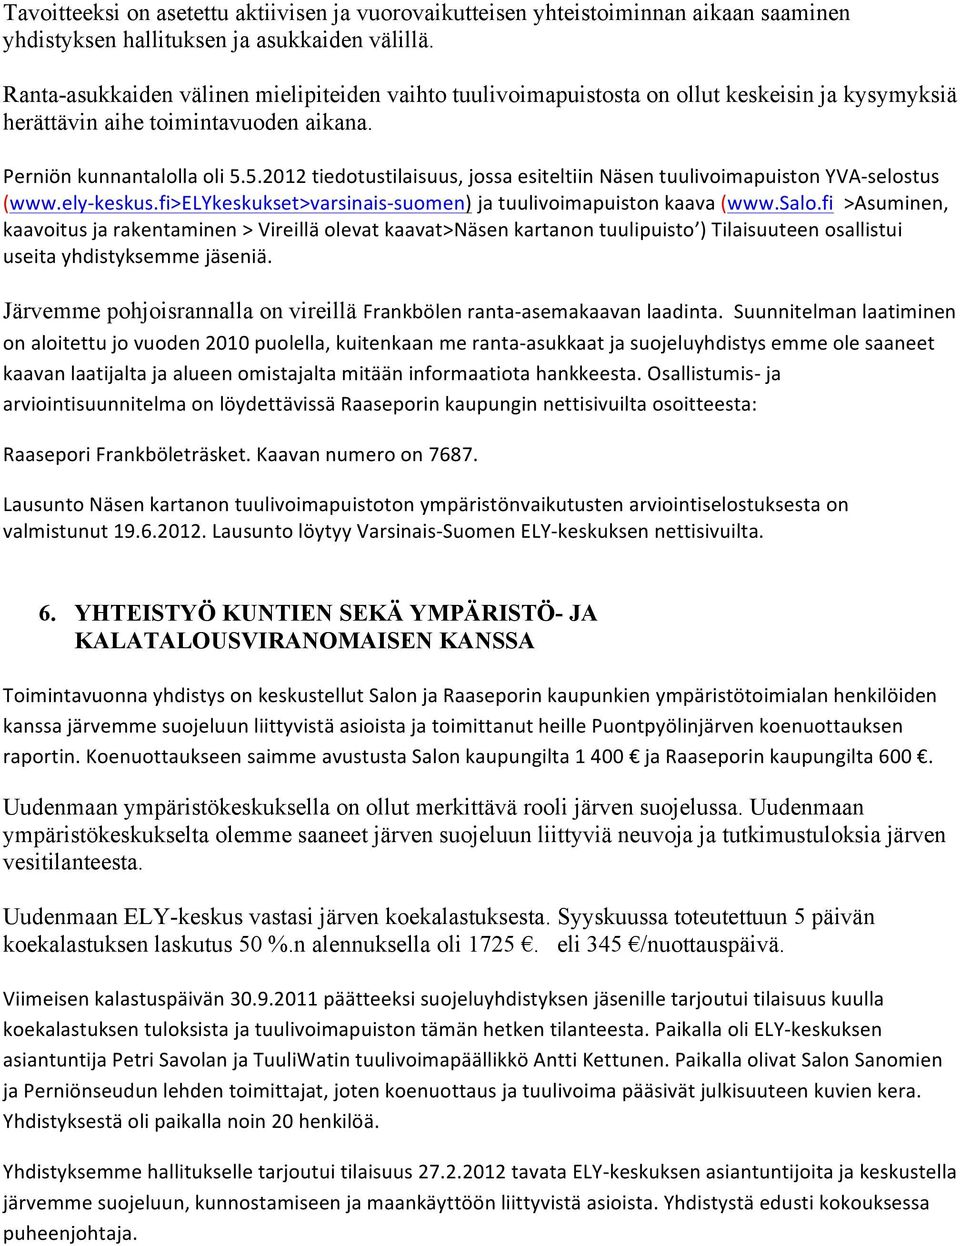 5.2012 tiedotustilaisuus, jossa esiteltiin Näsen tuulivoimapuiston YVA- selostus (www.ely- keskus.fi>elykeskukset>varsinais- suomen) ja tuulivoimapuiston kaava (www.salo.